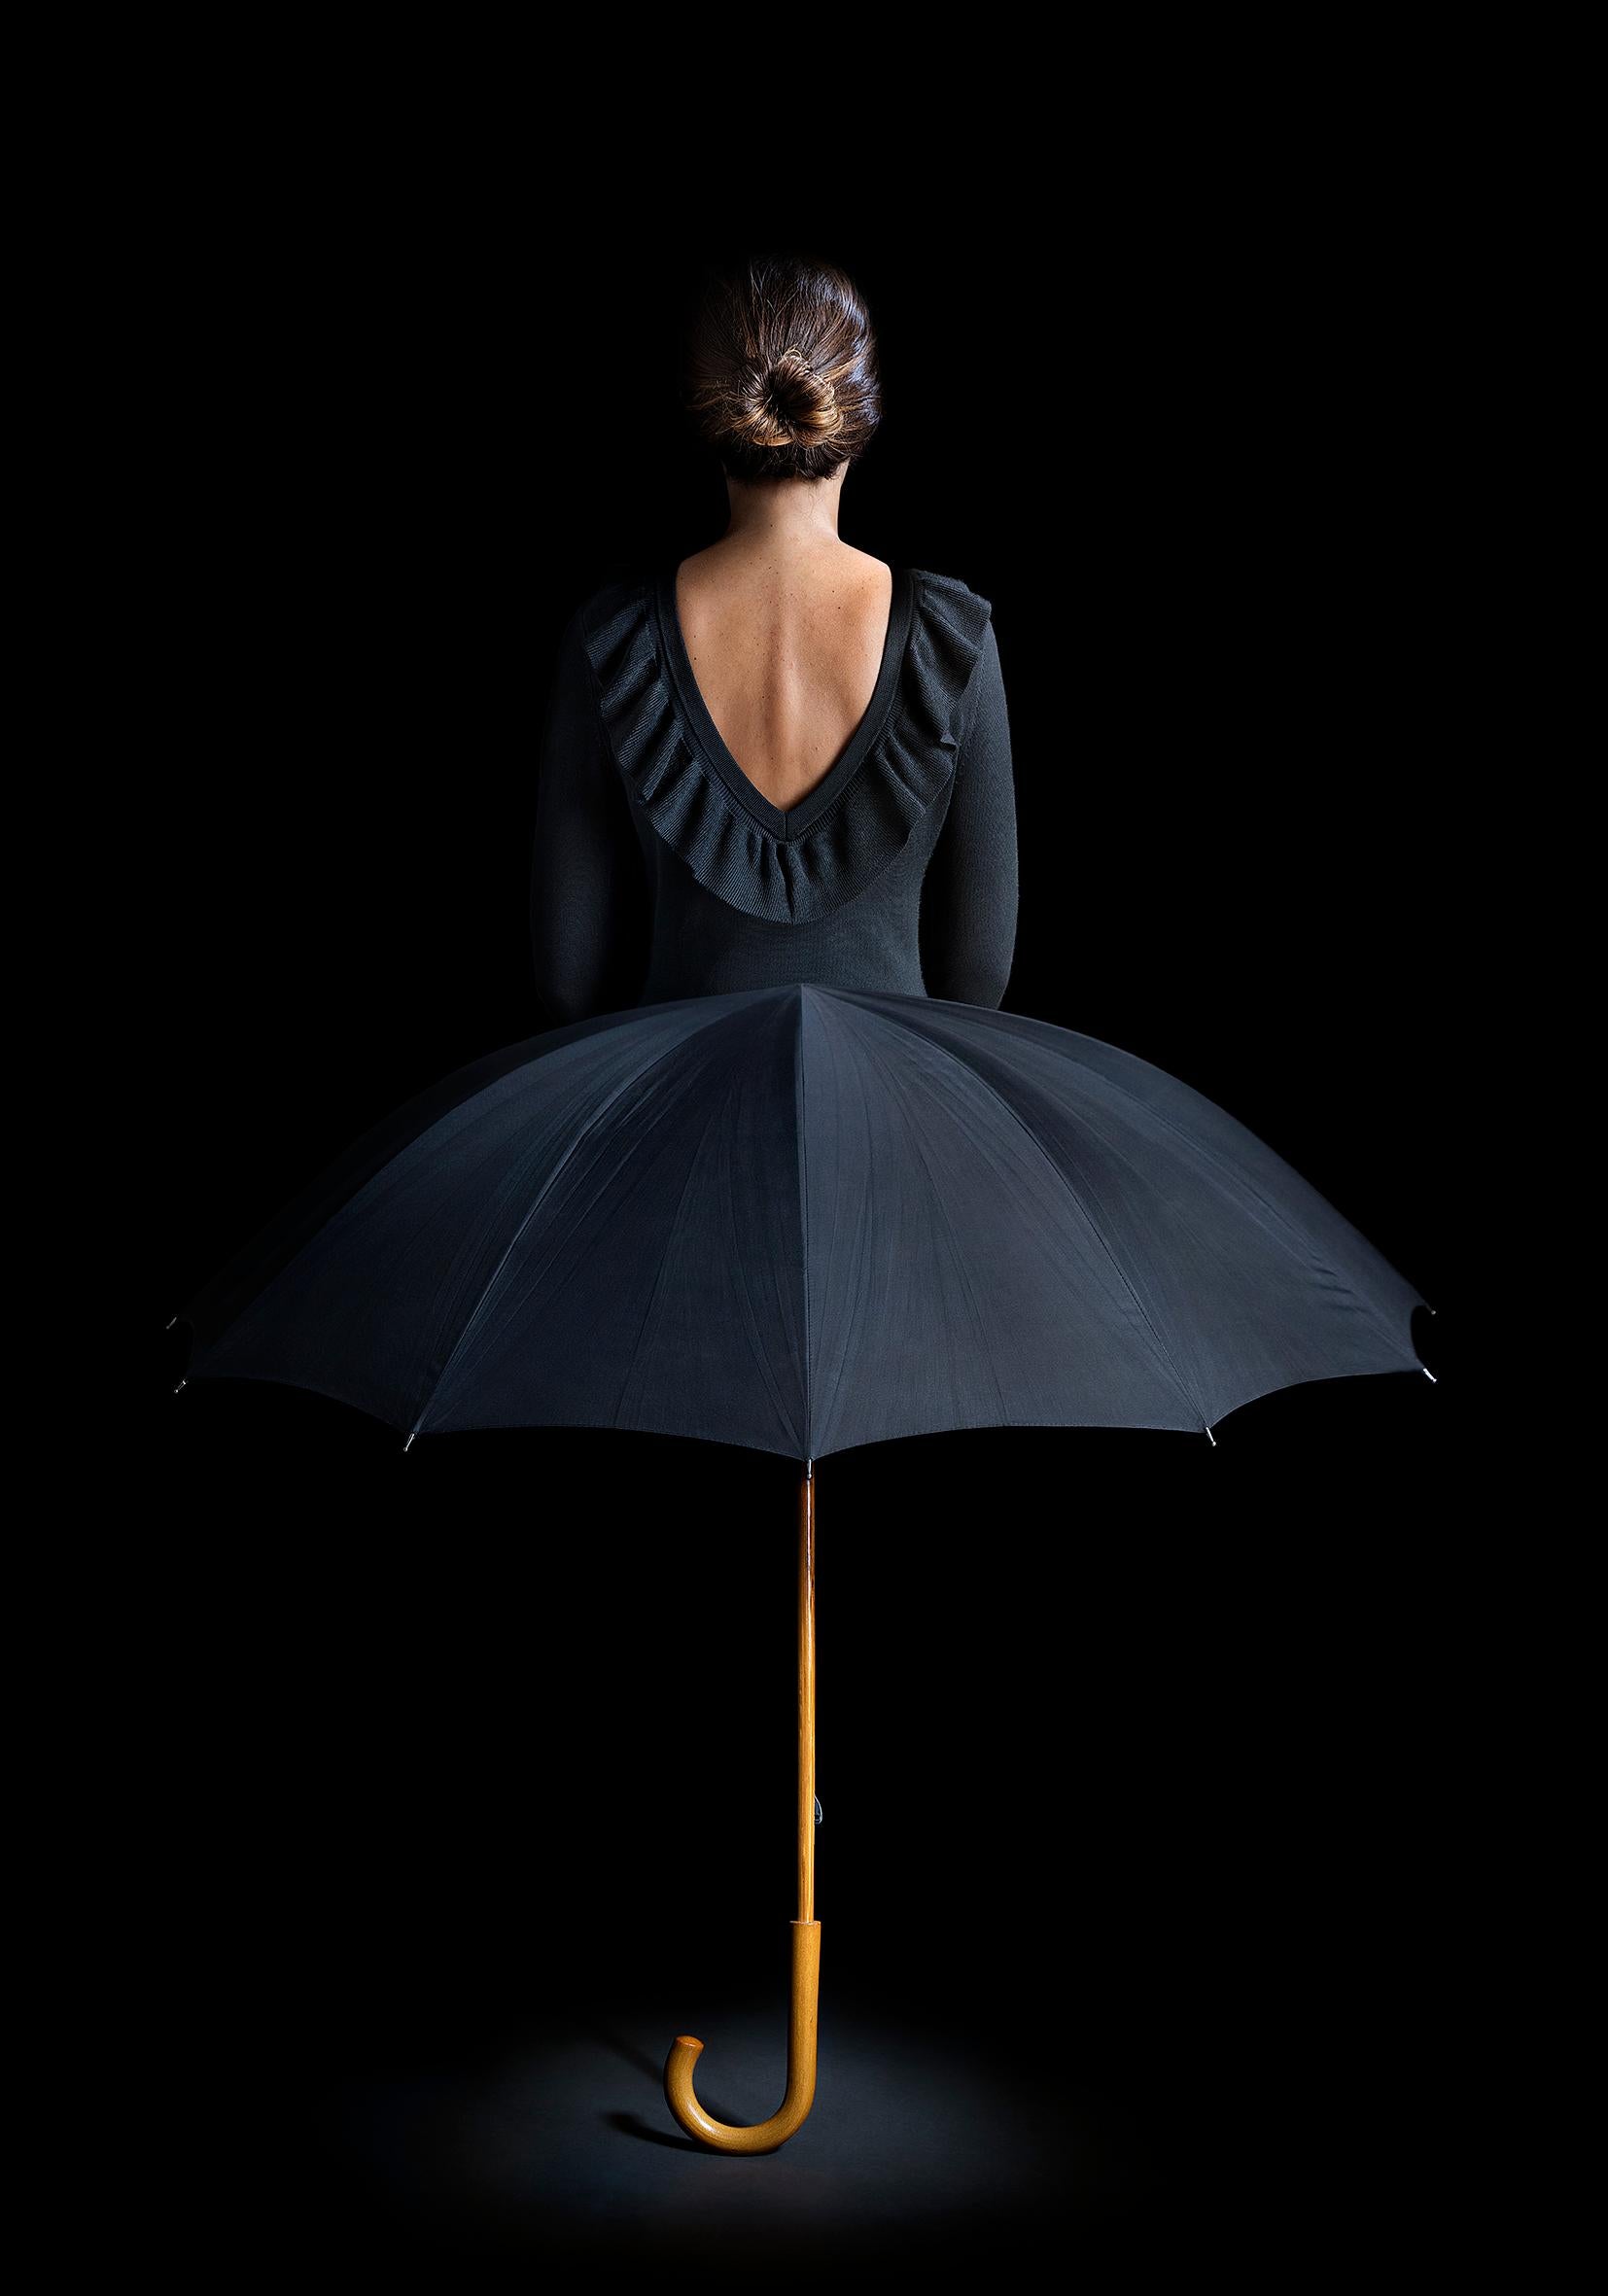 Miguel Vallinas Figurative Photograph – Du bist derjenige, der vor dem Regen schützt